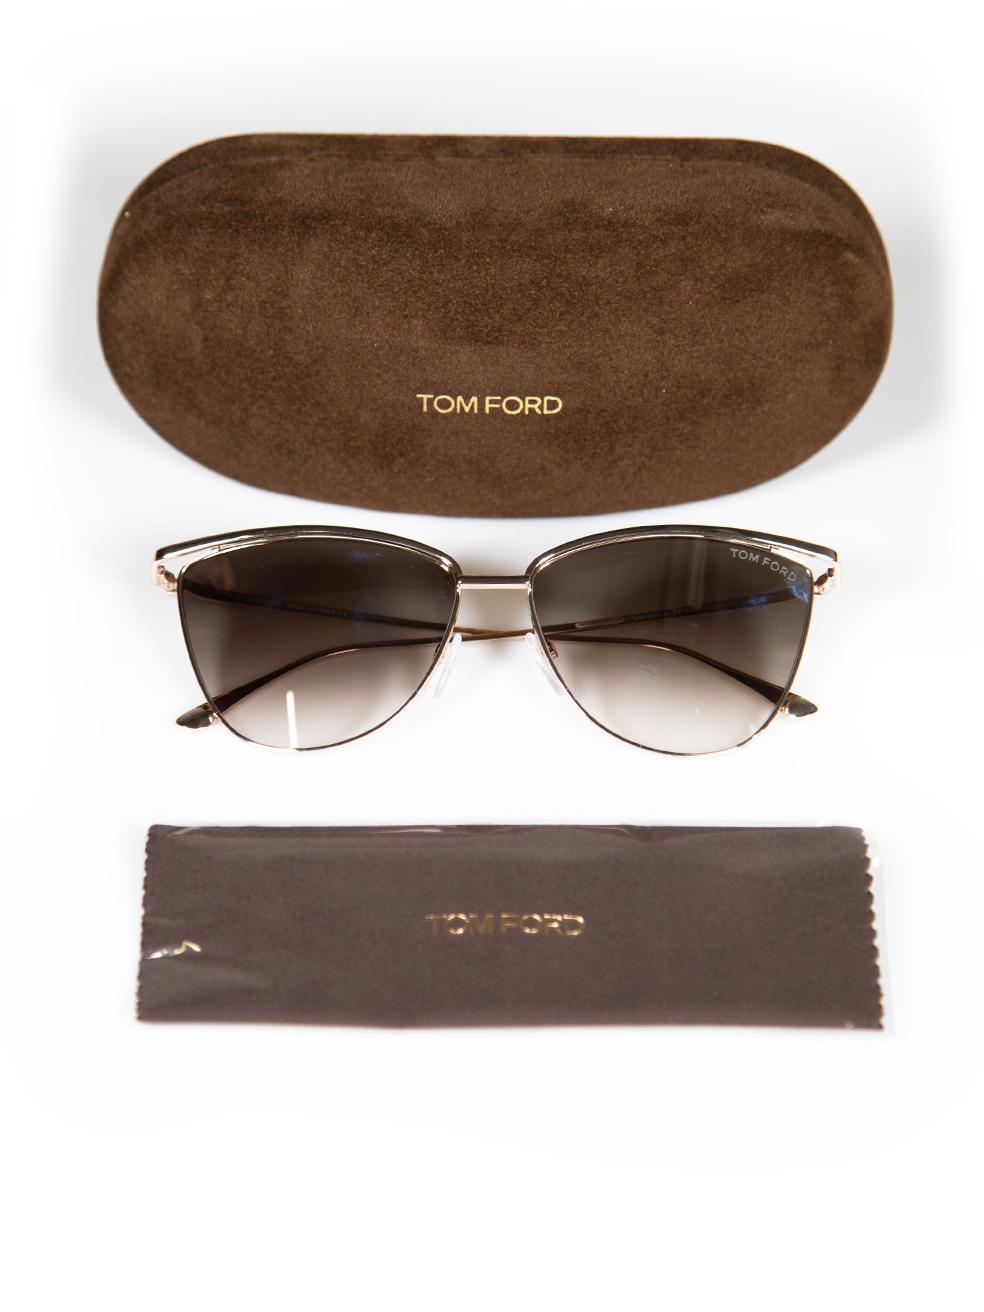 Tom Ford Shiny Rose Gold Veronica Sunglasses 4